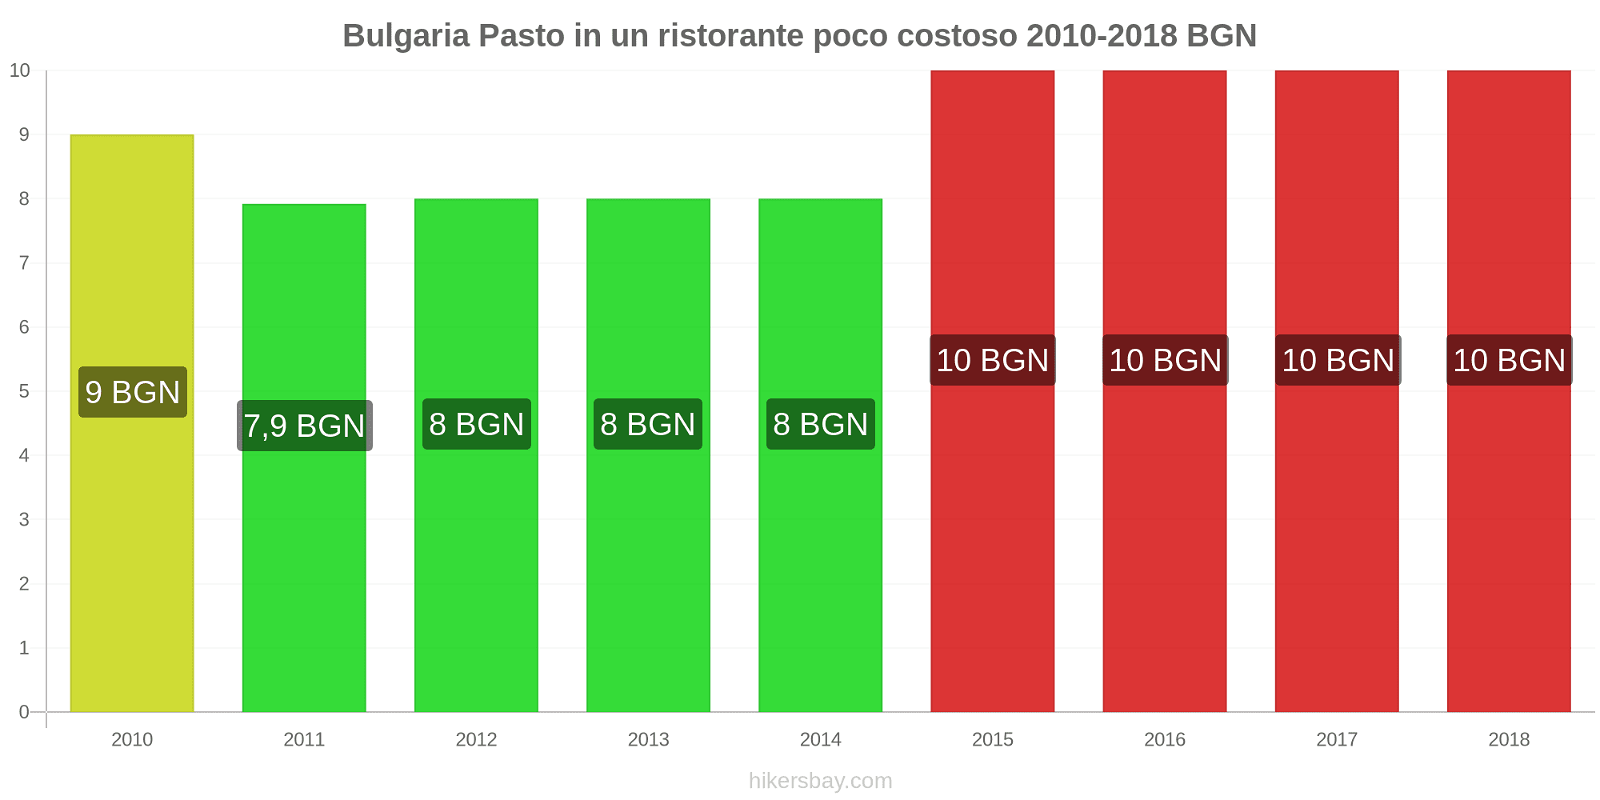 Bulgaria cambi di prezzo Pasto in un ristorante economico hikersbay.com